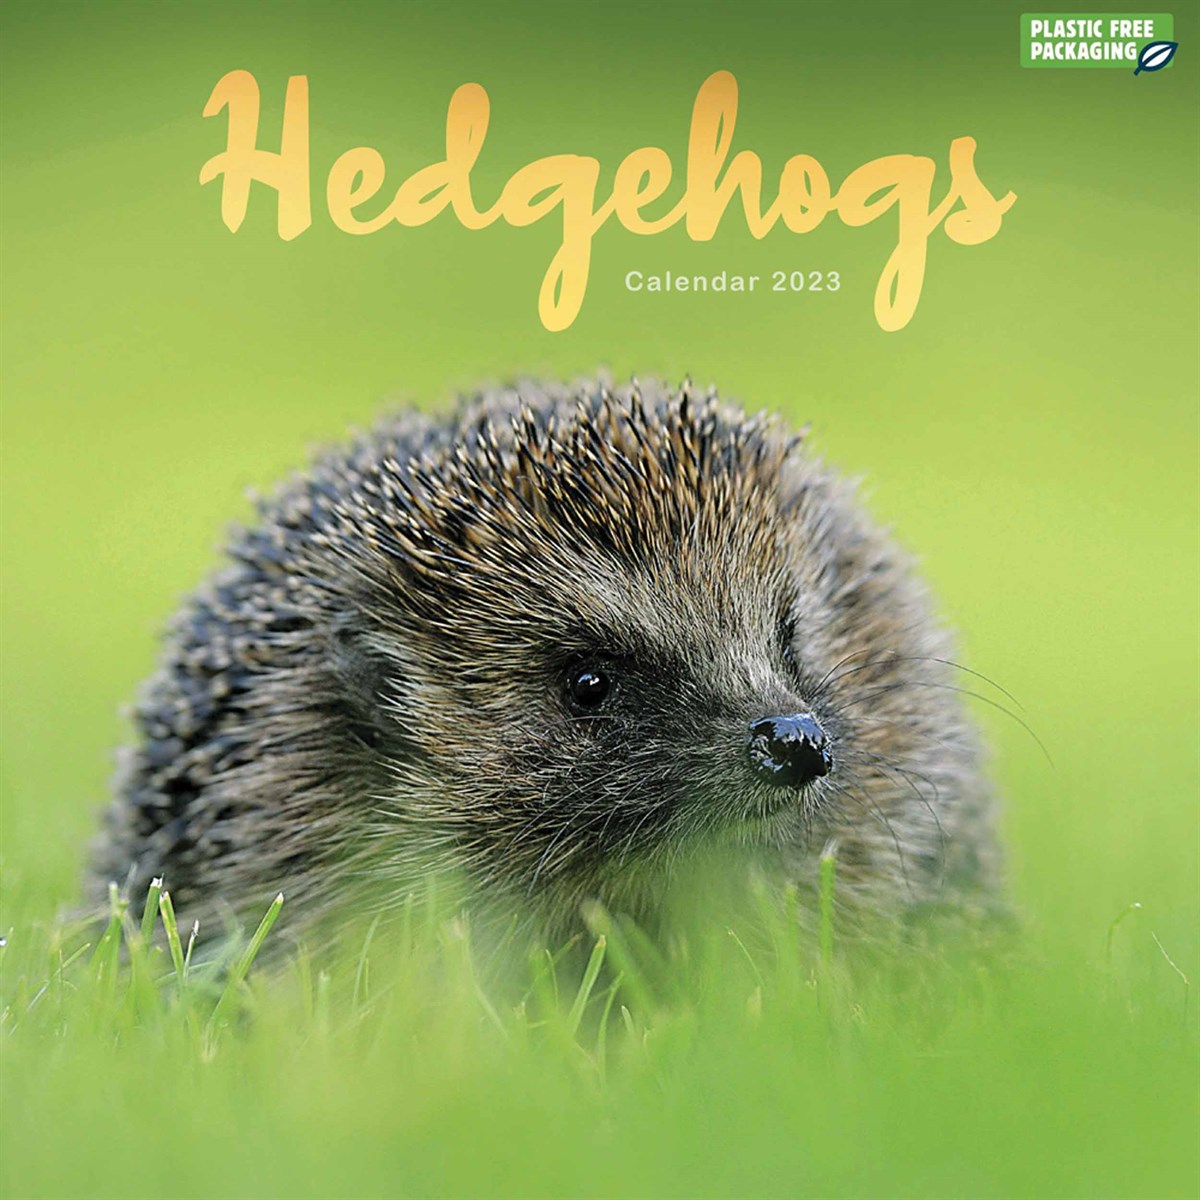 Hedgehogs 2023 Calendars